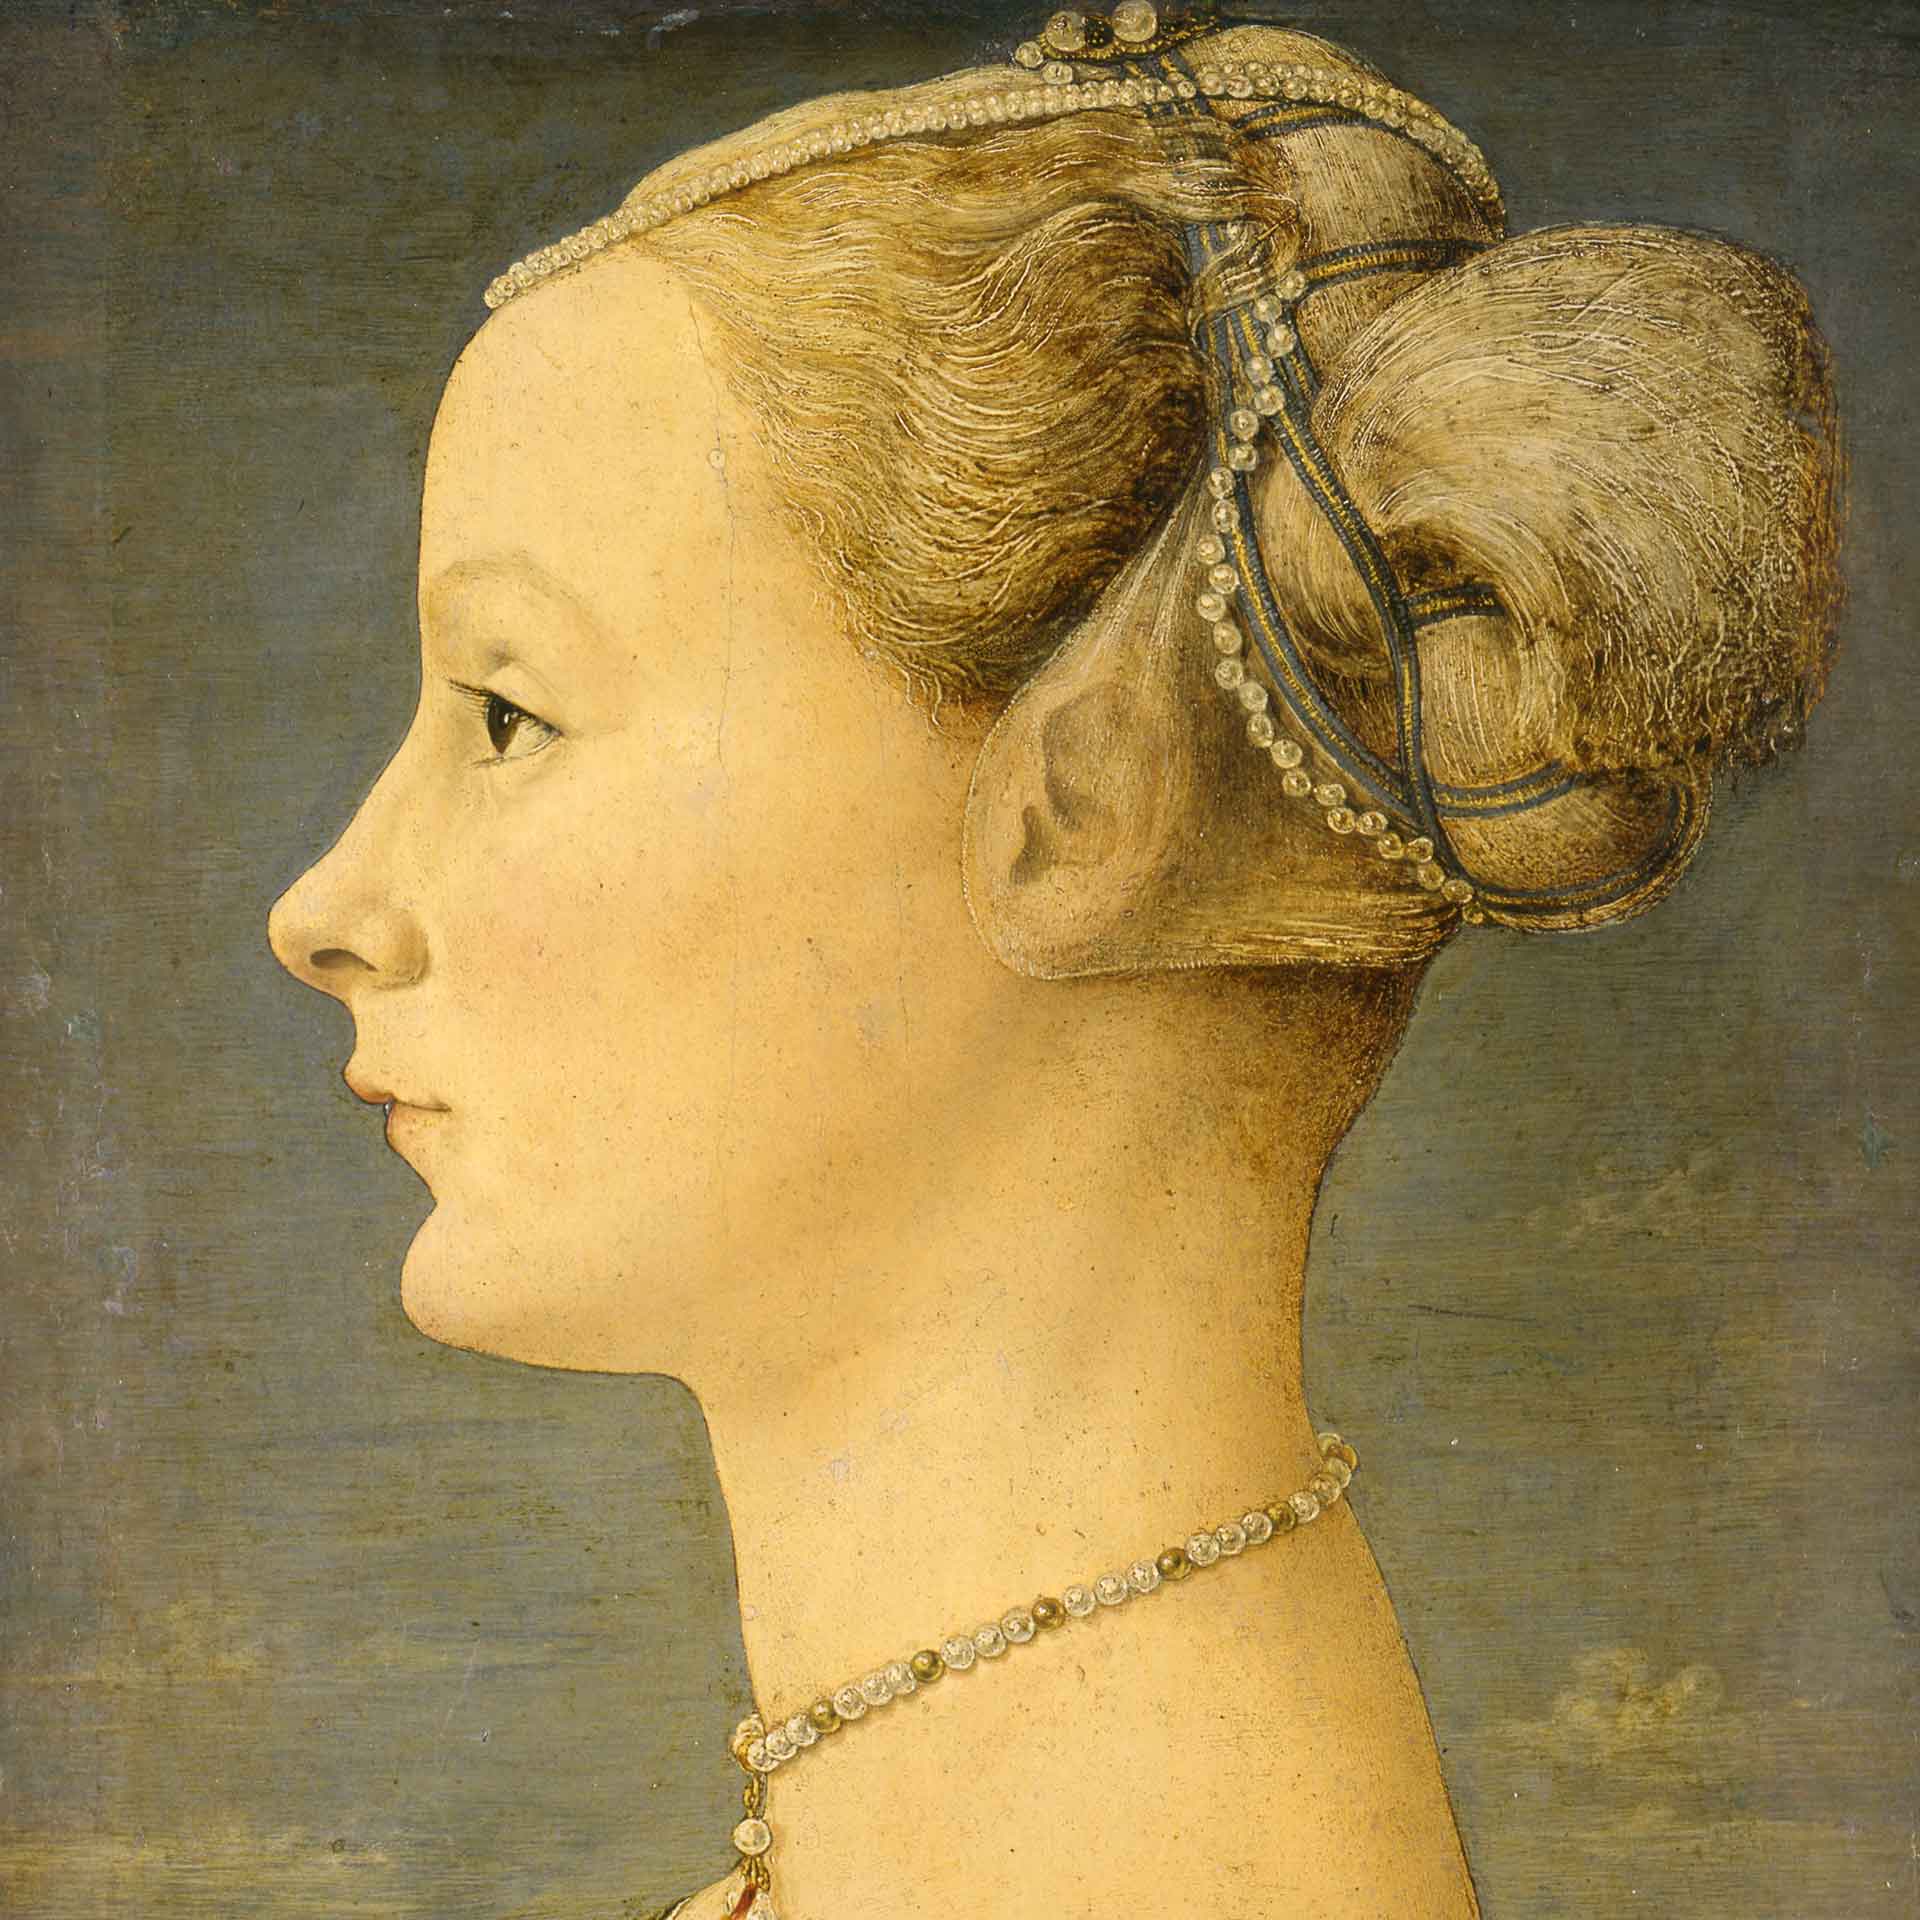 Ritratto di una giovane dama del pollaiolo che ritrae di profilo una donna, con acconciatura elaborata, gioielli per capelli e collana, sfondo neutro.